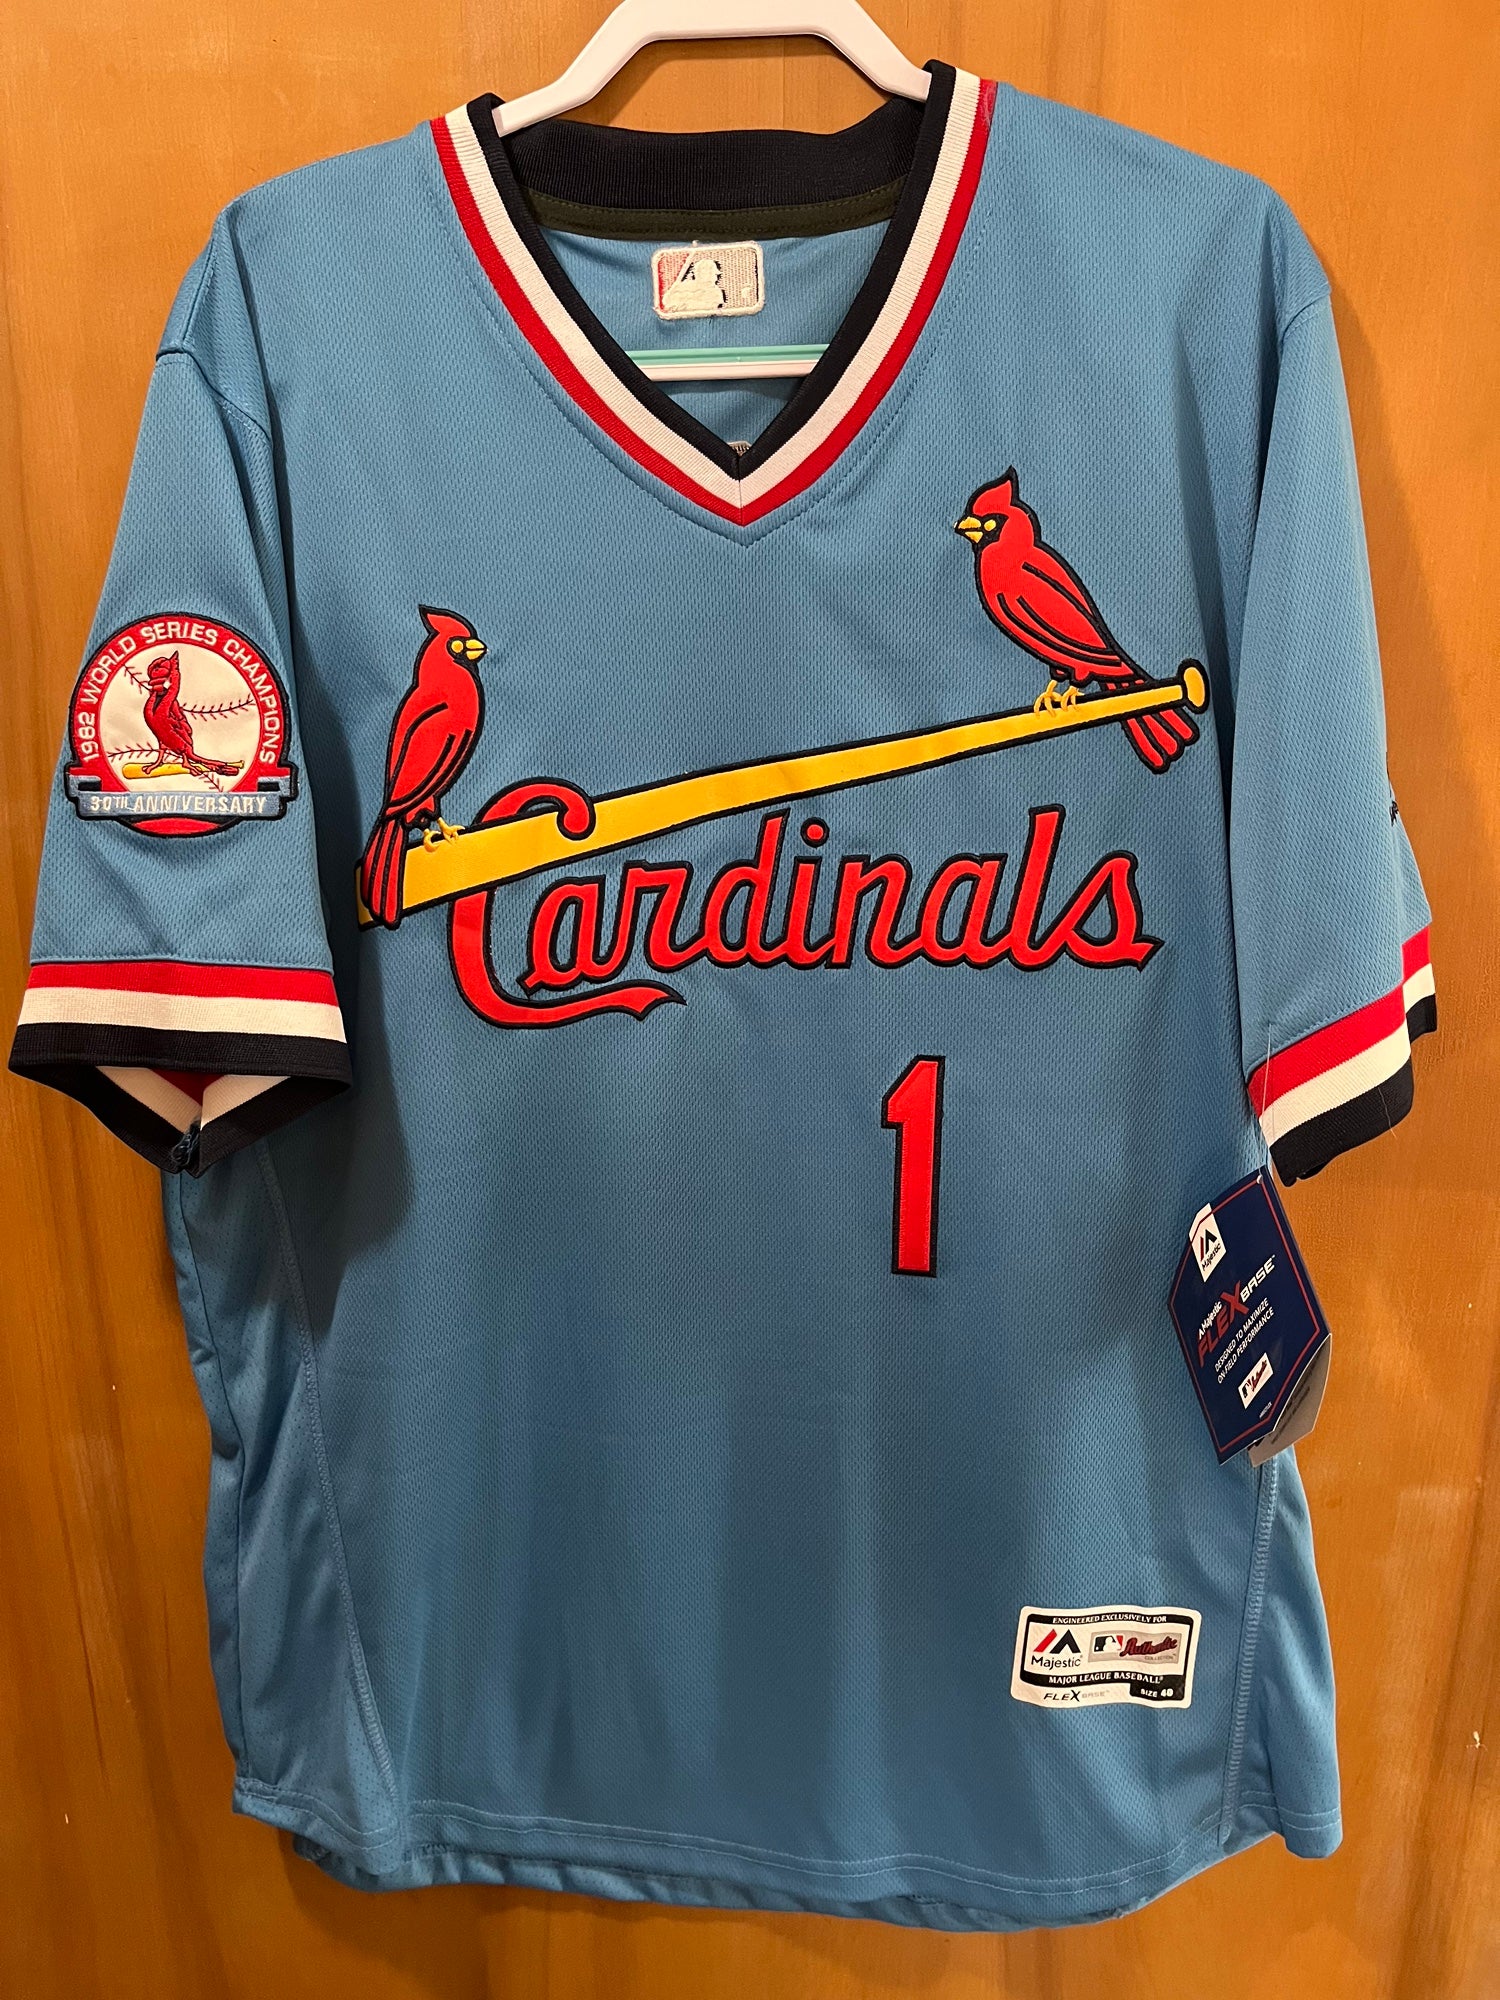 cardinals 1982 jersey